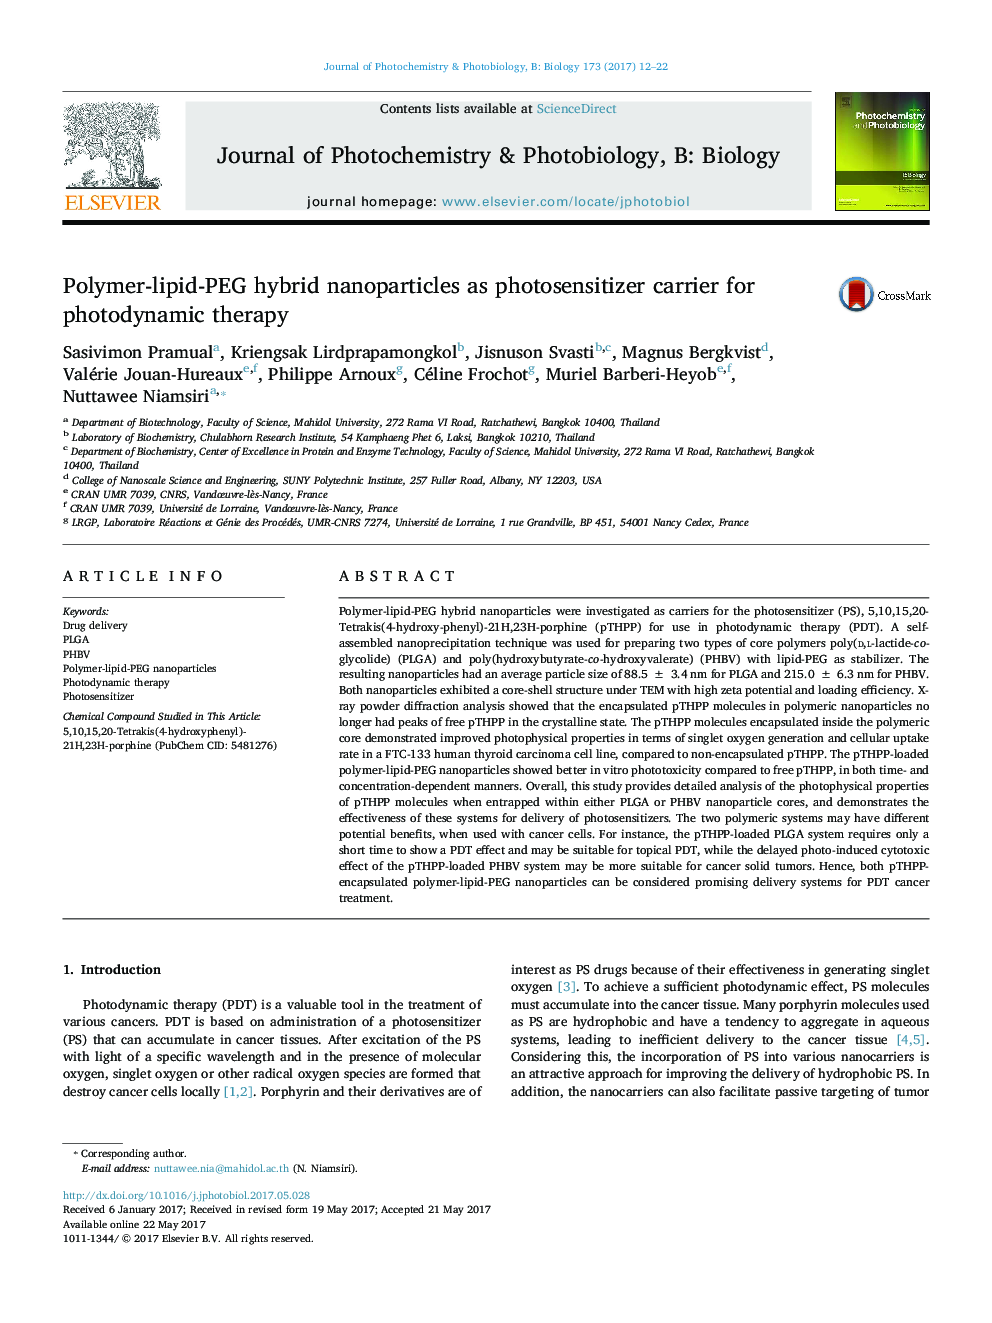 نانوذرات هیبرید پلیمر-لیپید-پلی اتیلن به عنوان یک ماده حساس به فتوسنتز کننده برای درمان فوتودینامیک 